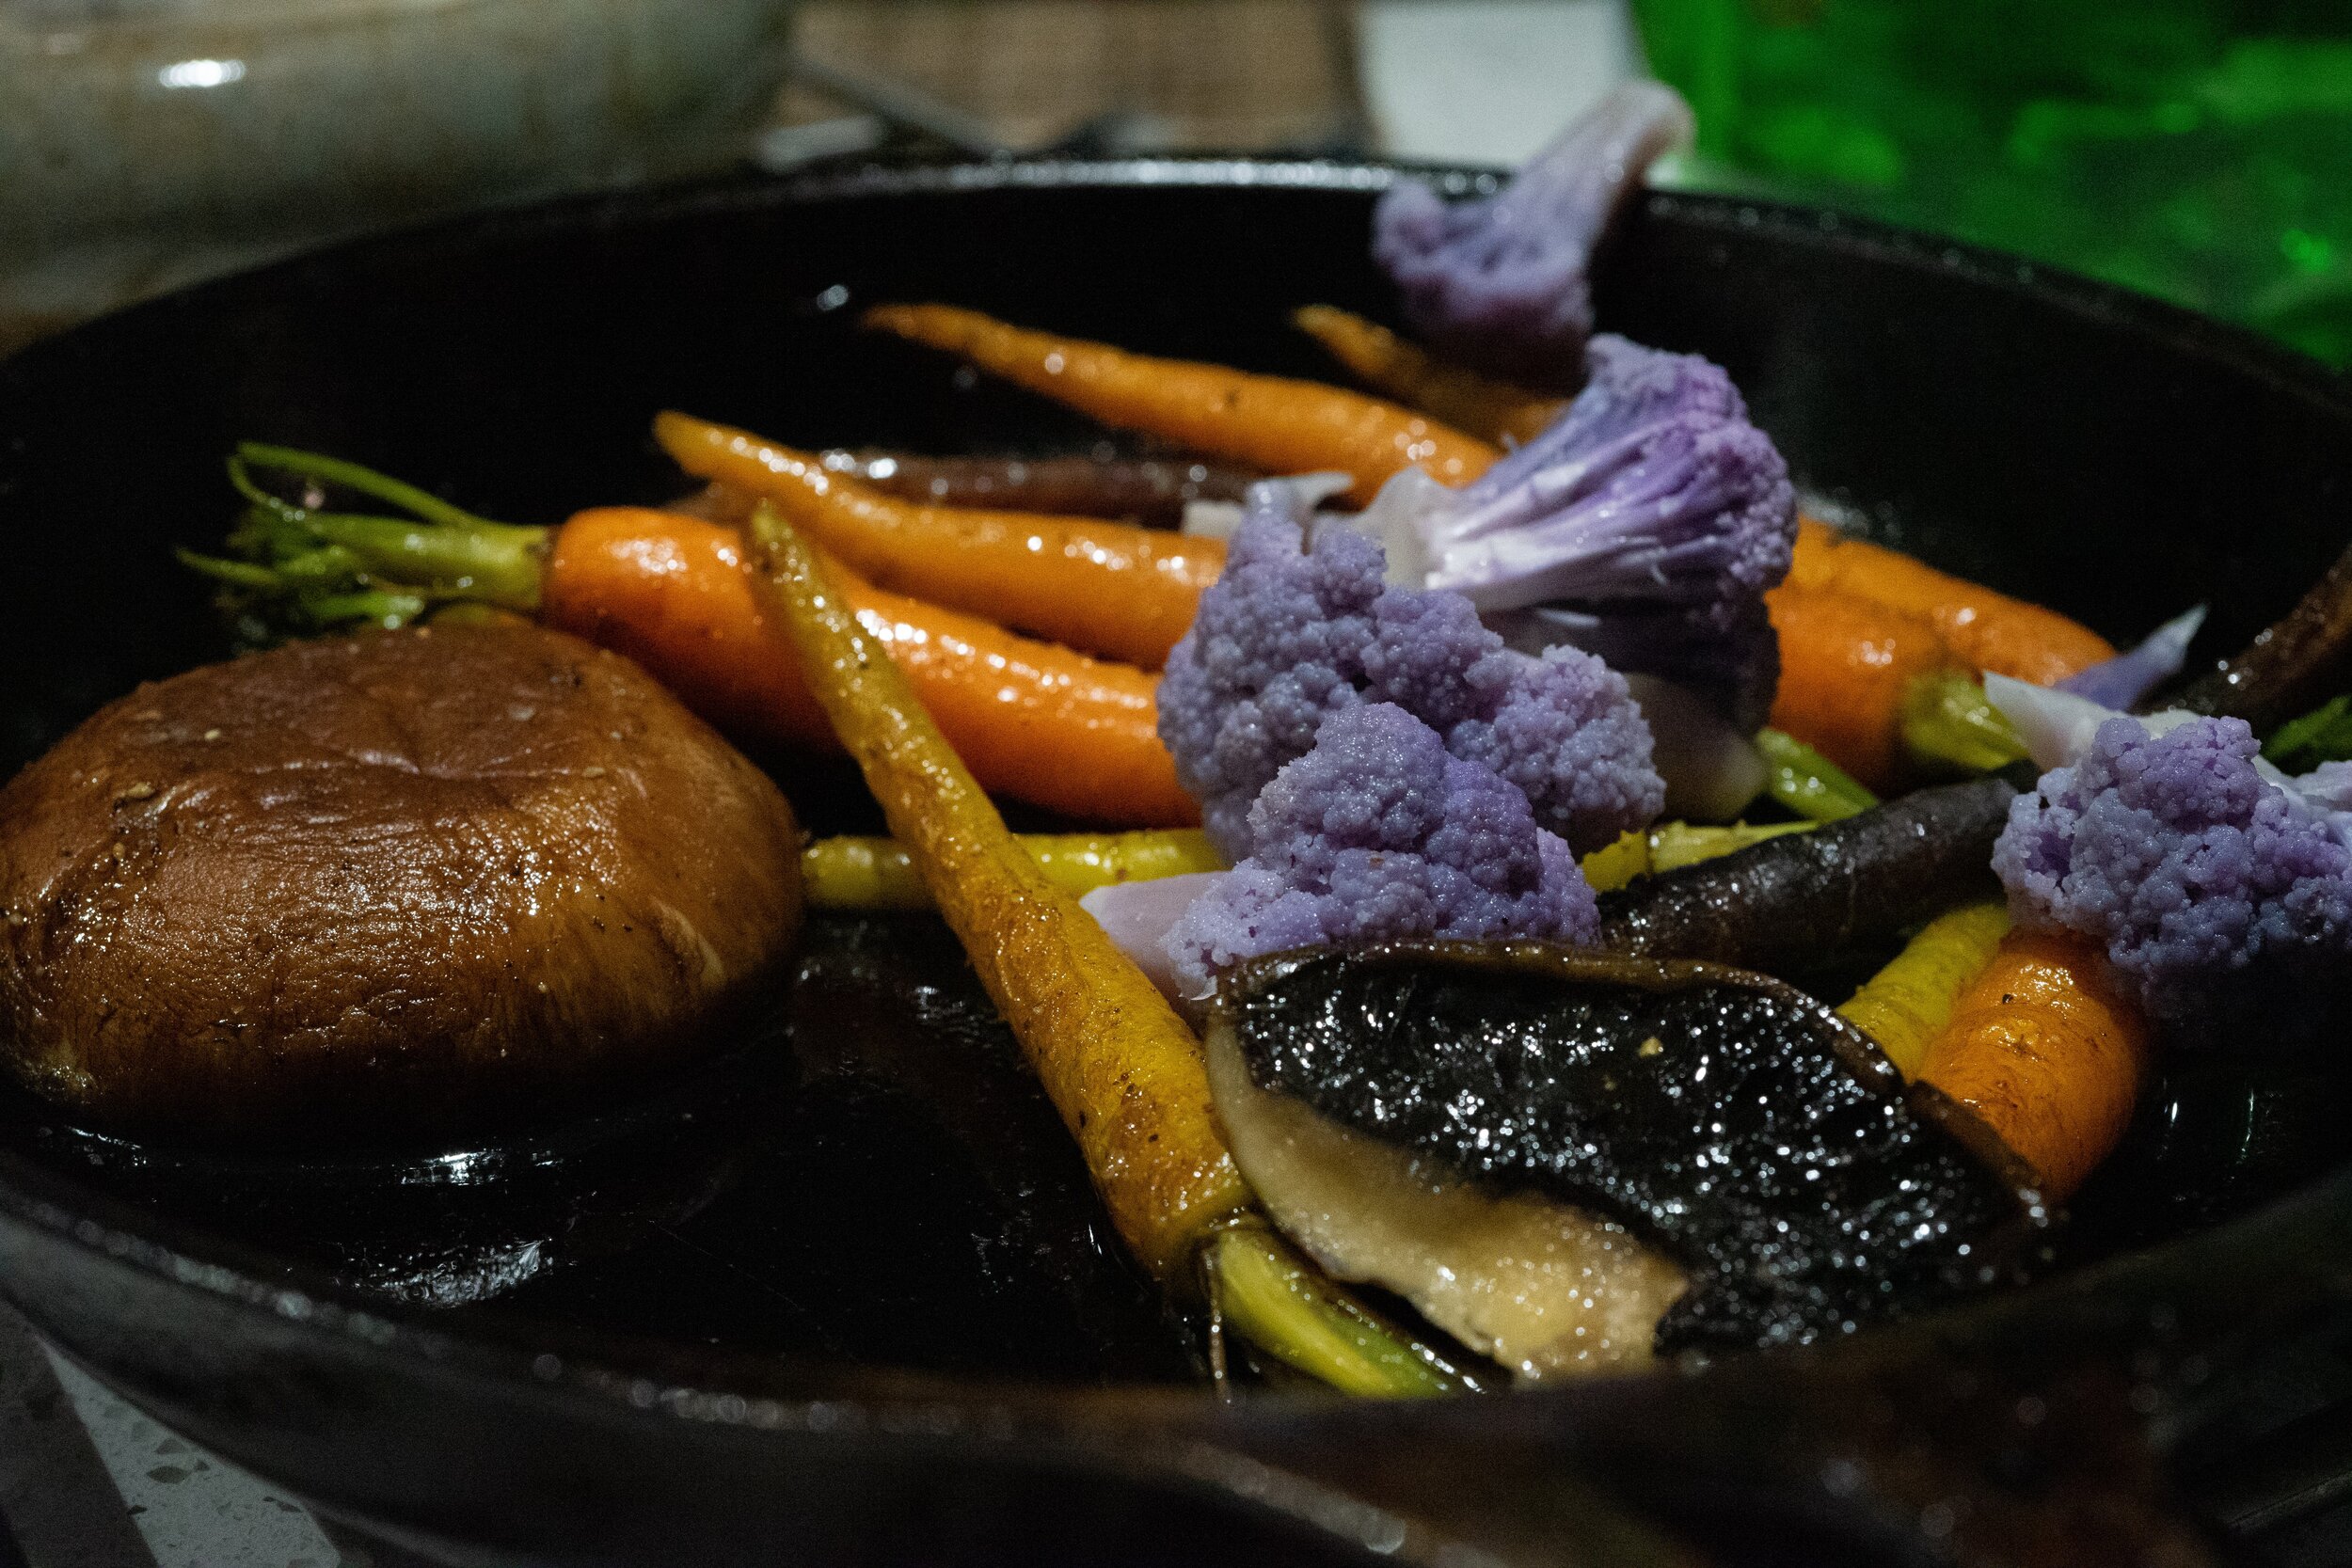 pan of vegetables.jpg